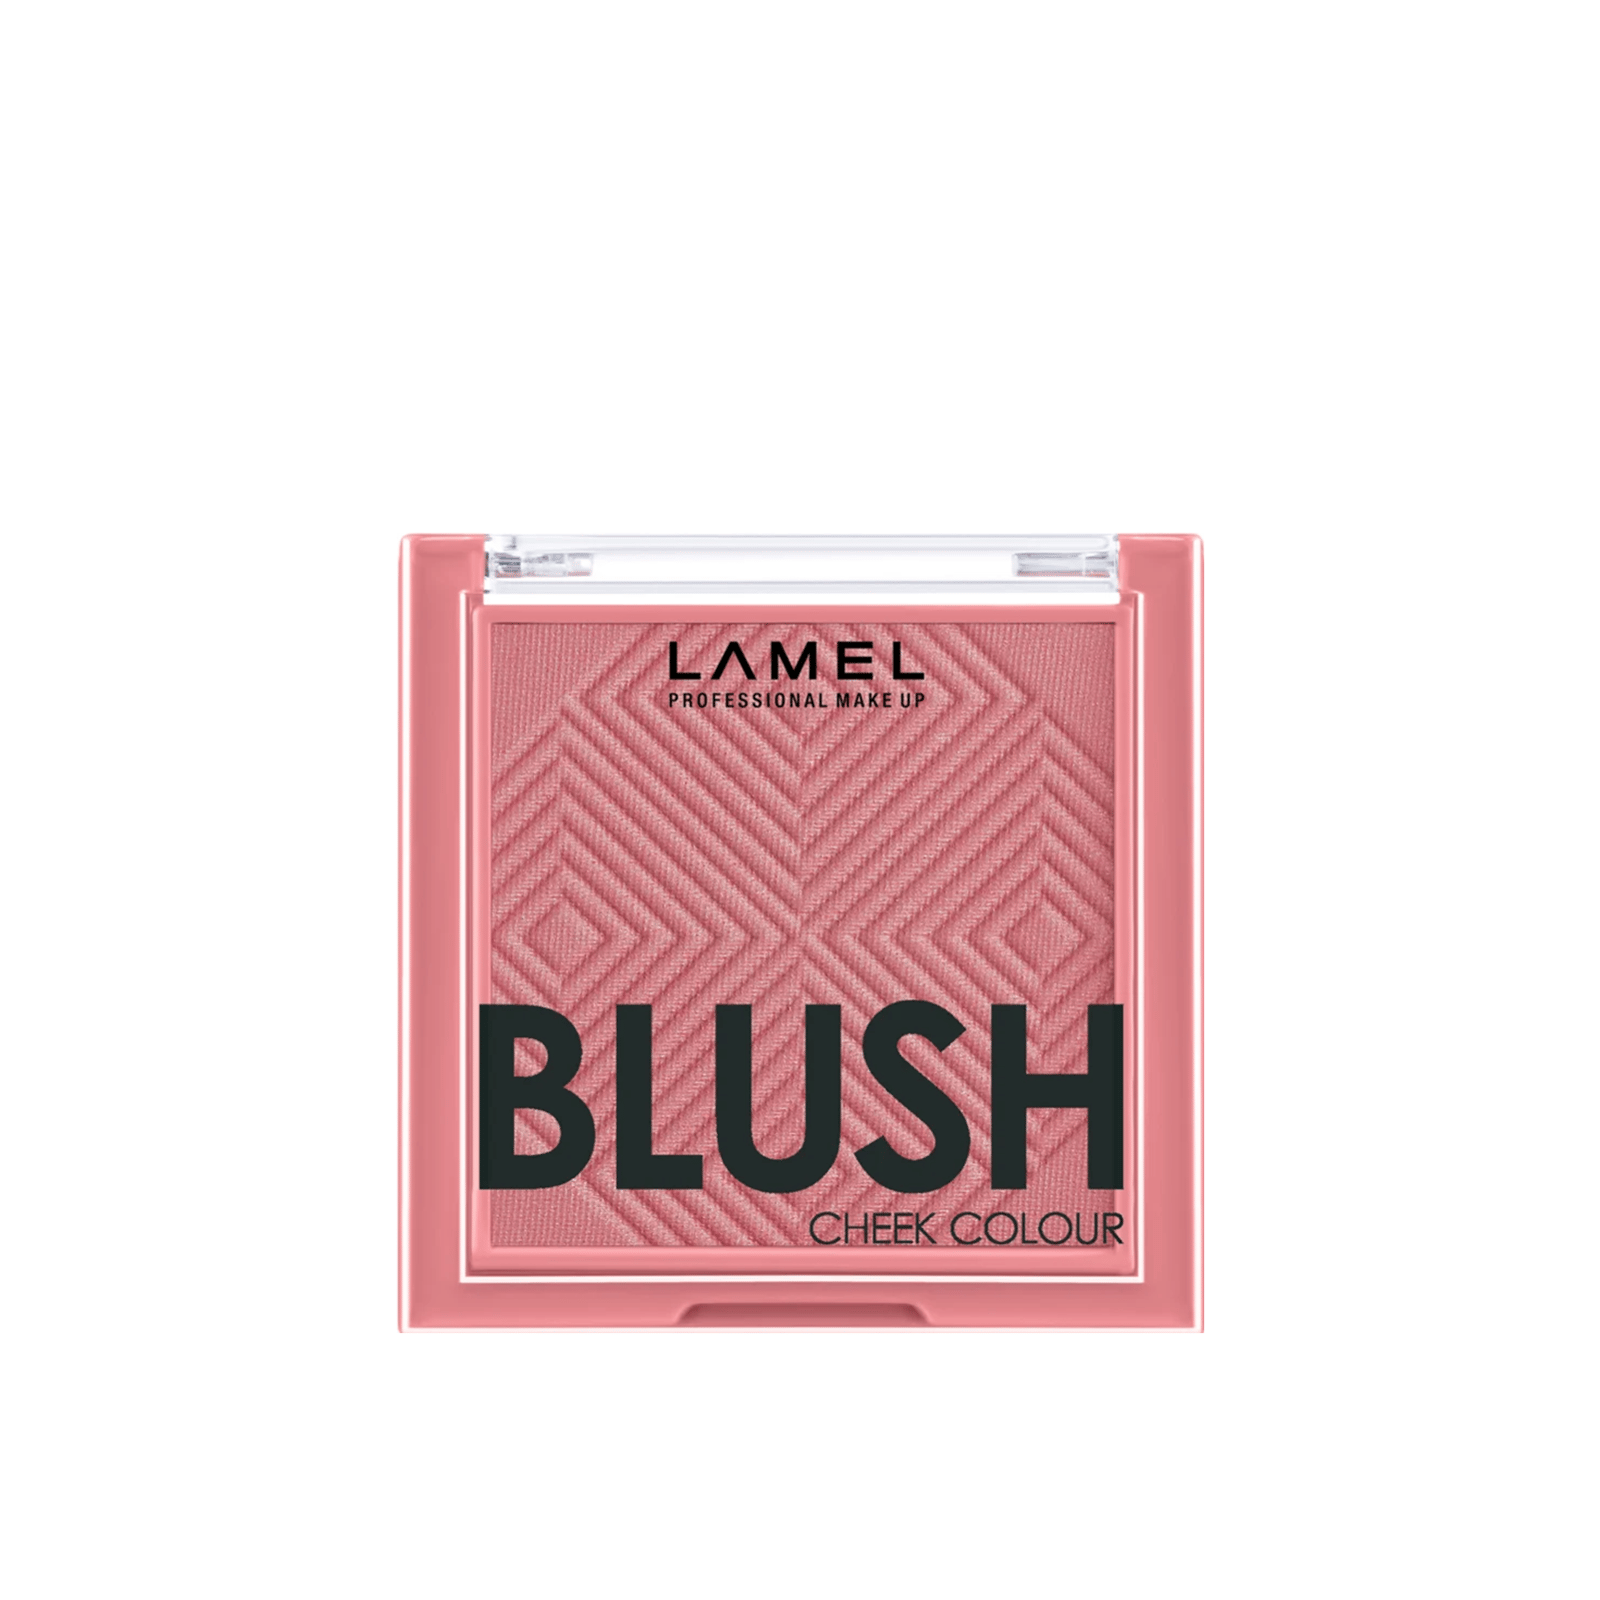 Lamel Blush Cheek Colour 405 Pink 3.8g